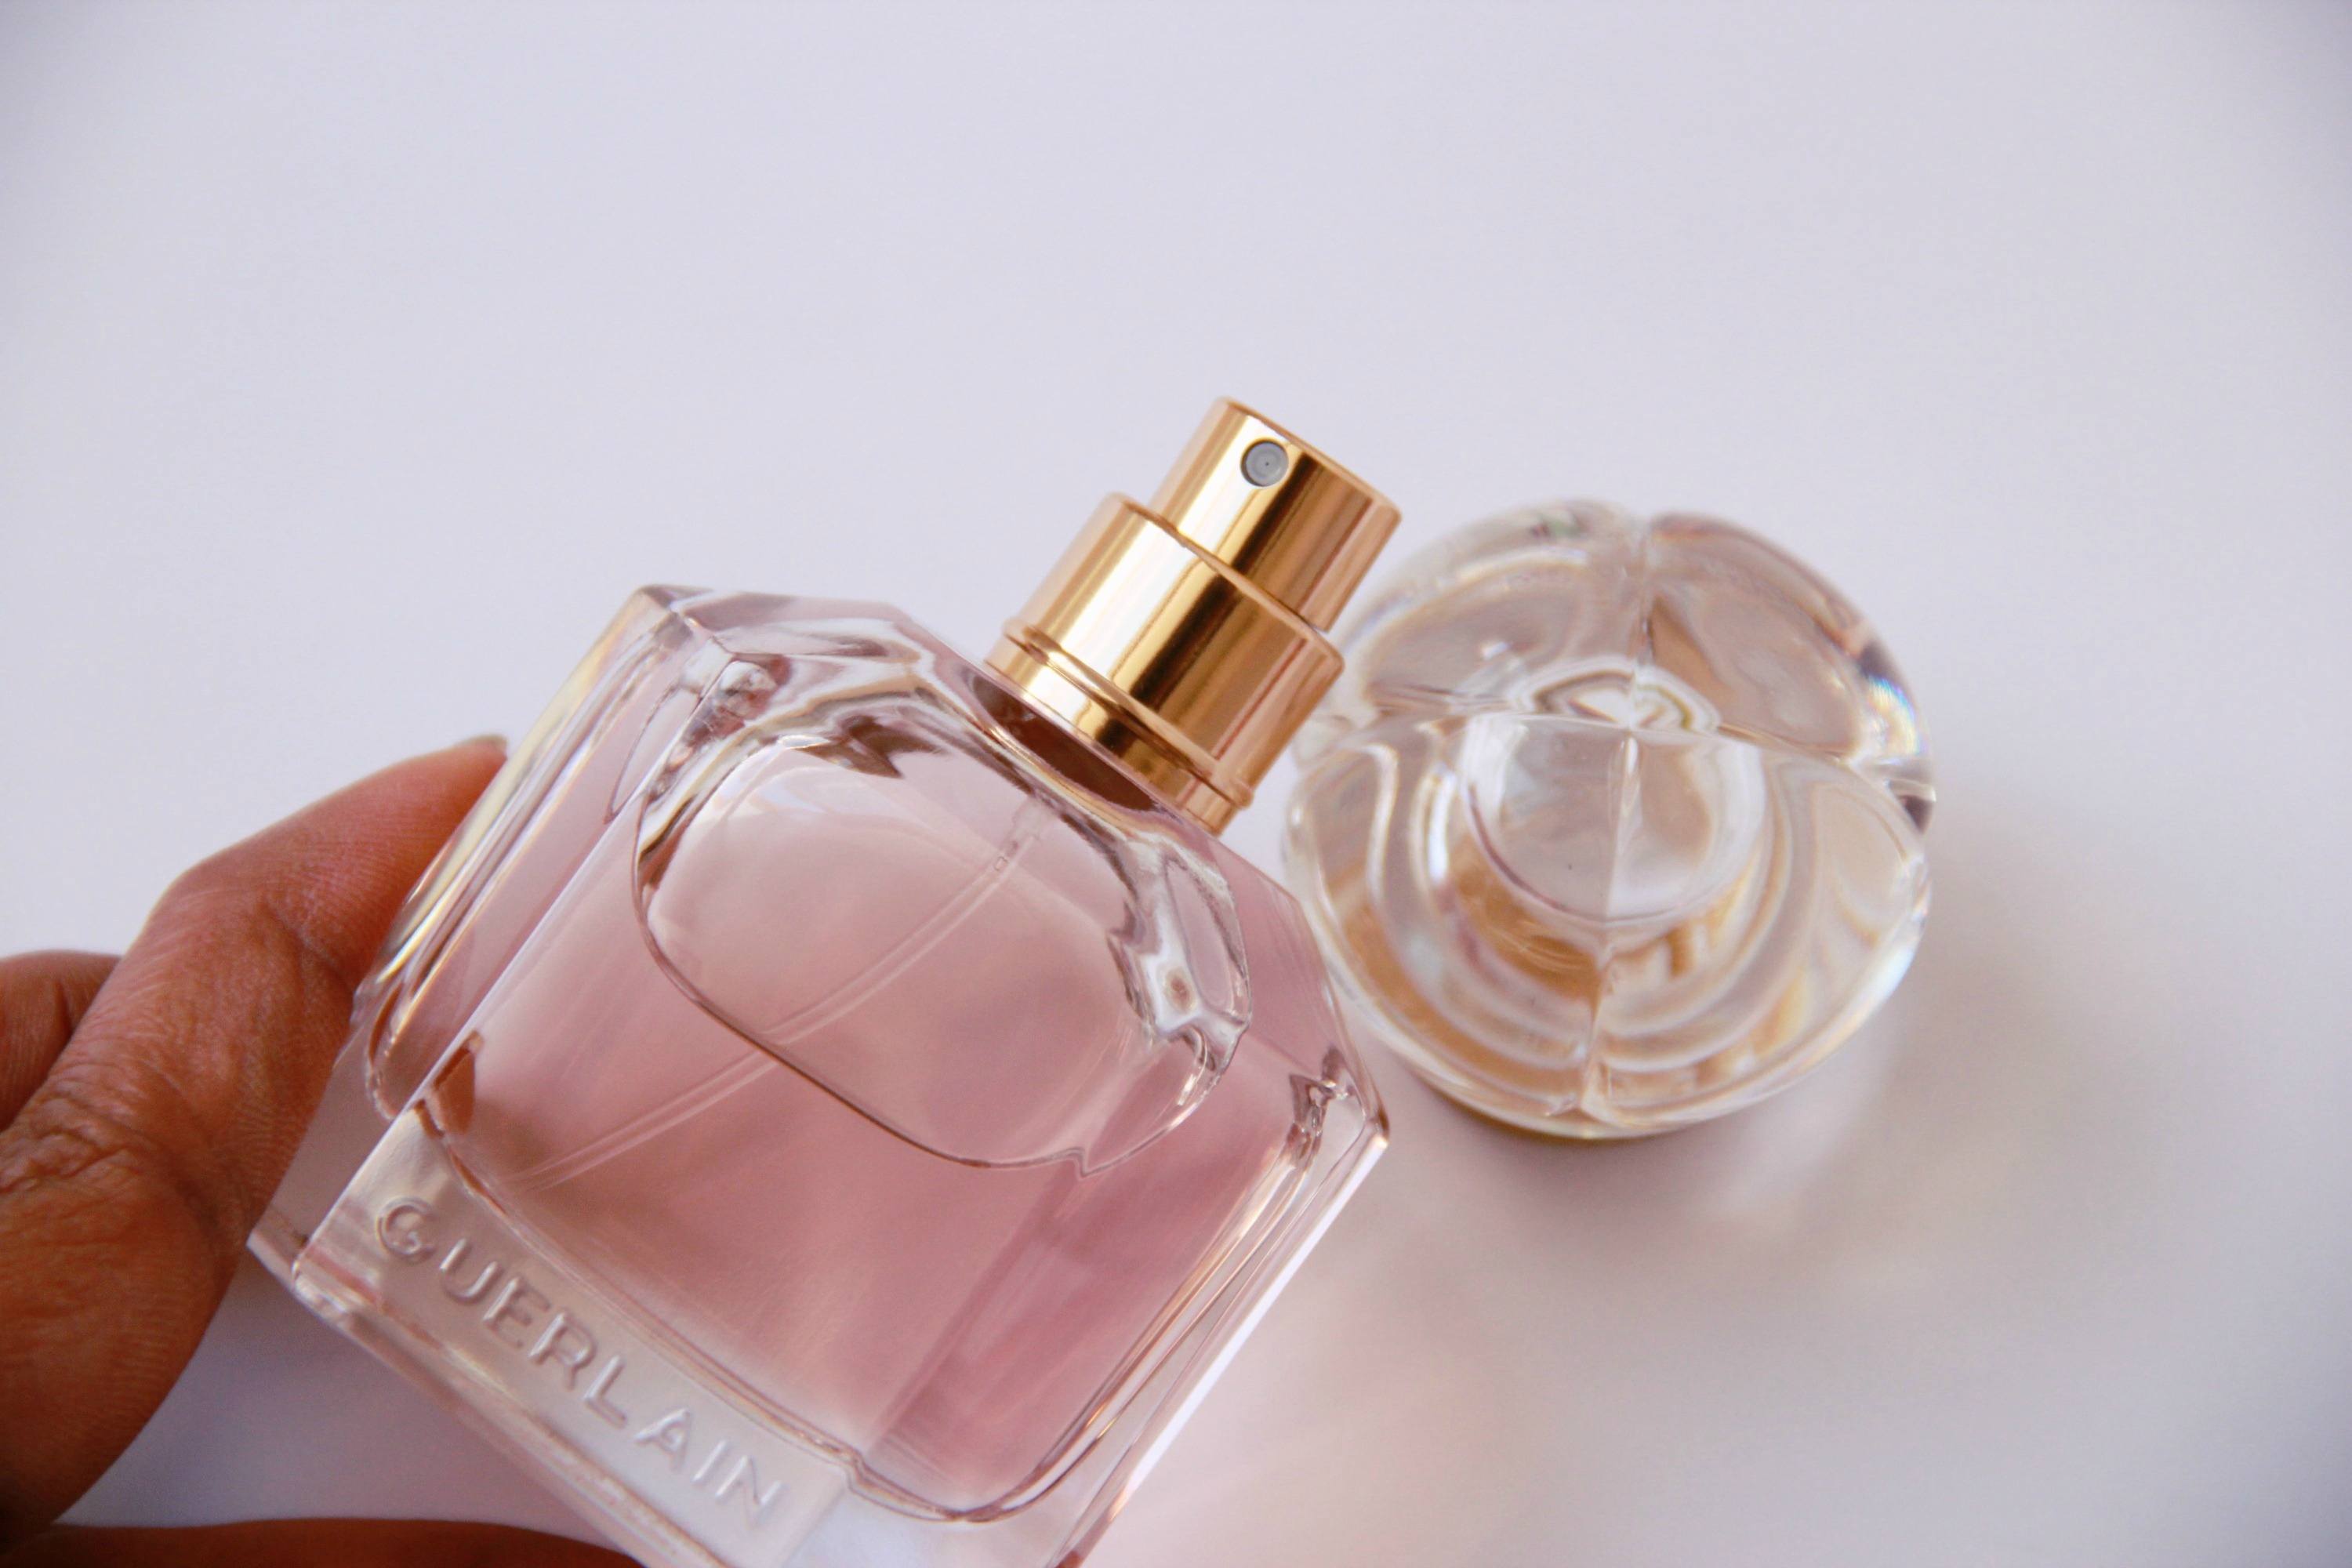 Mon Guerlain Eau De Parfum Review Bottle in hand